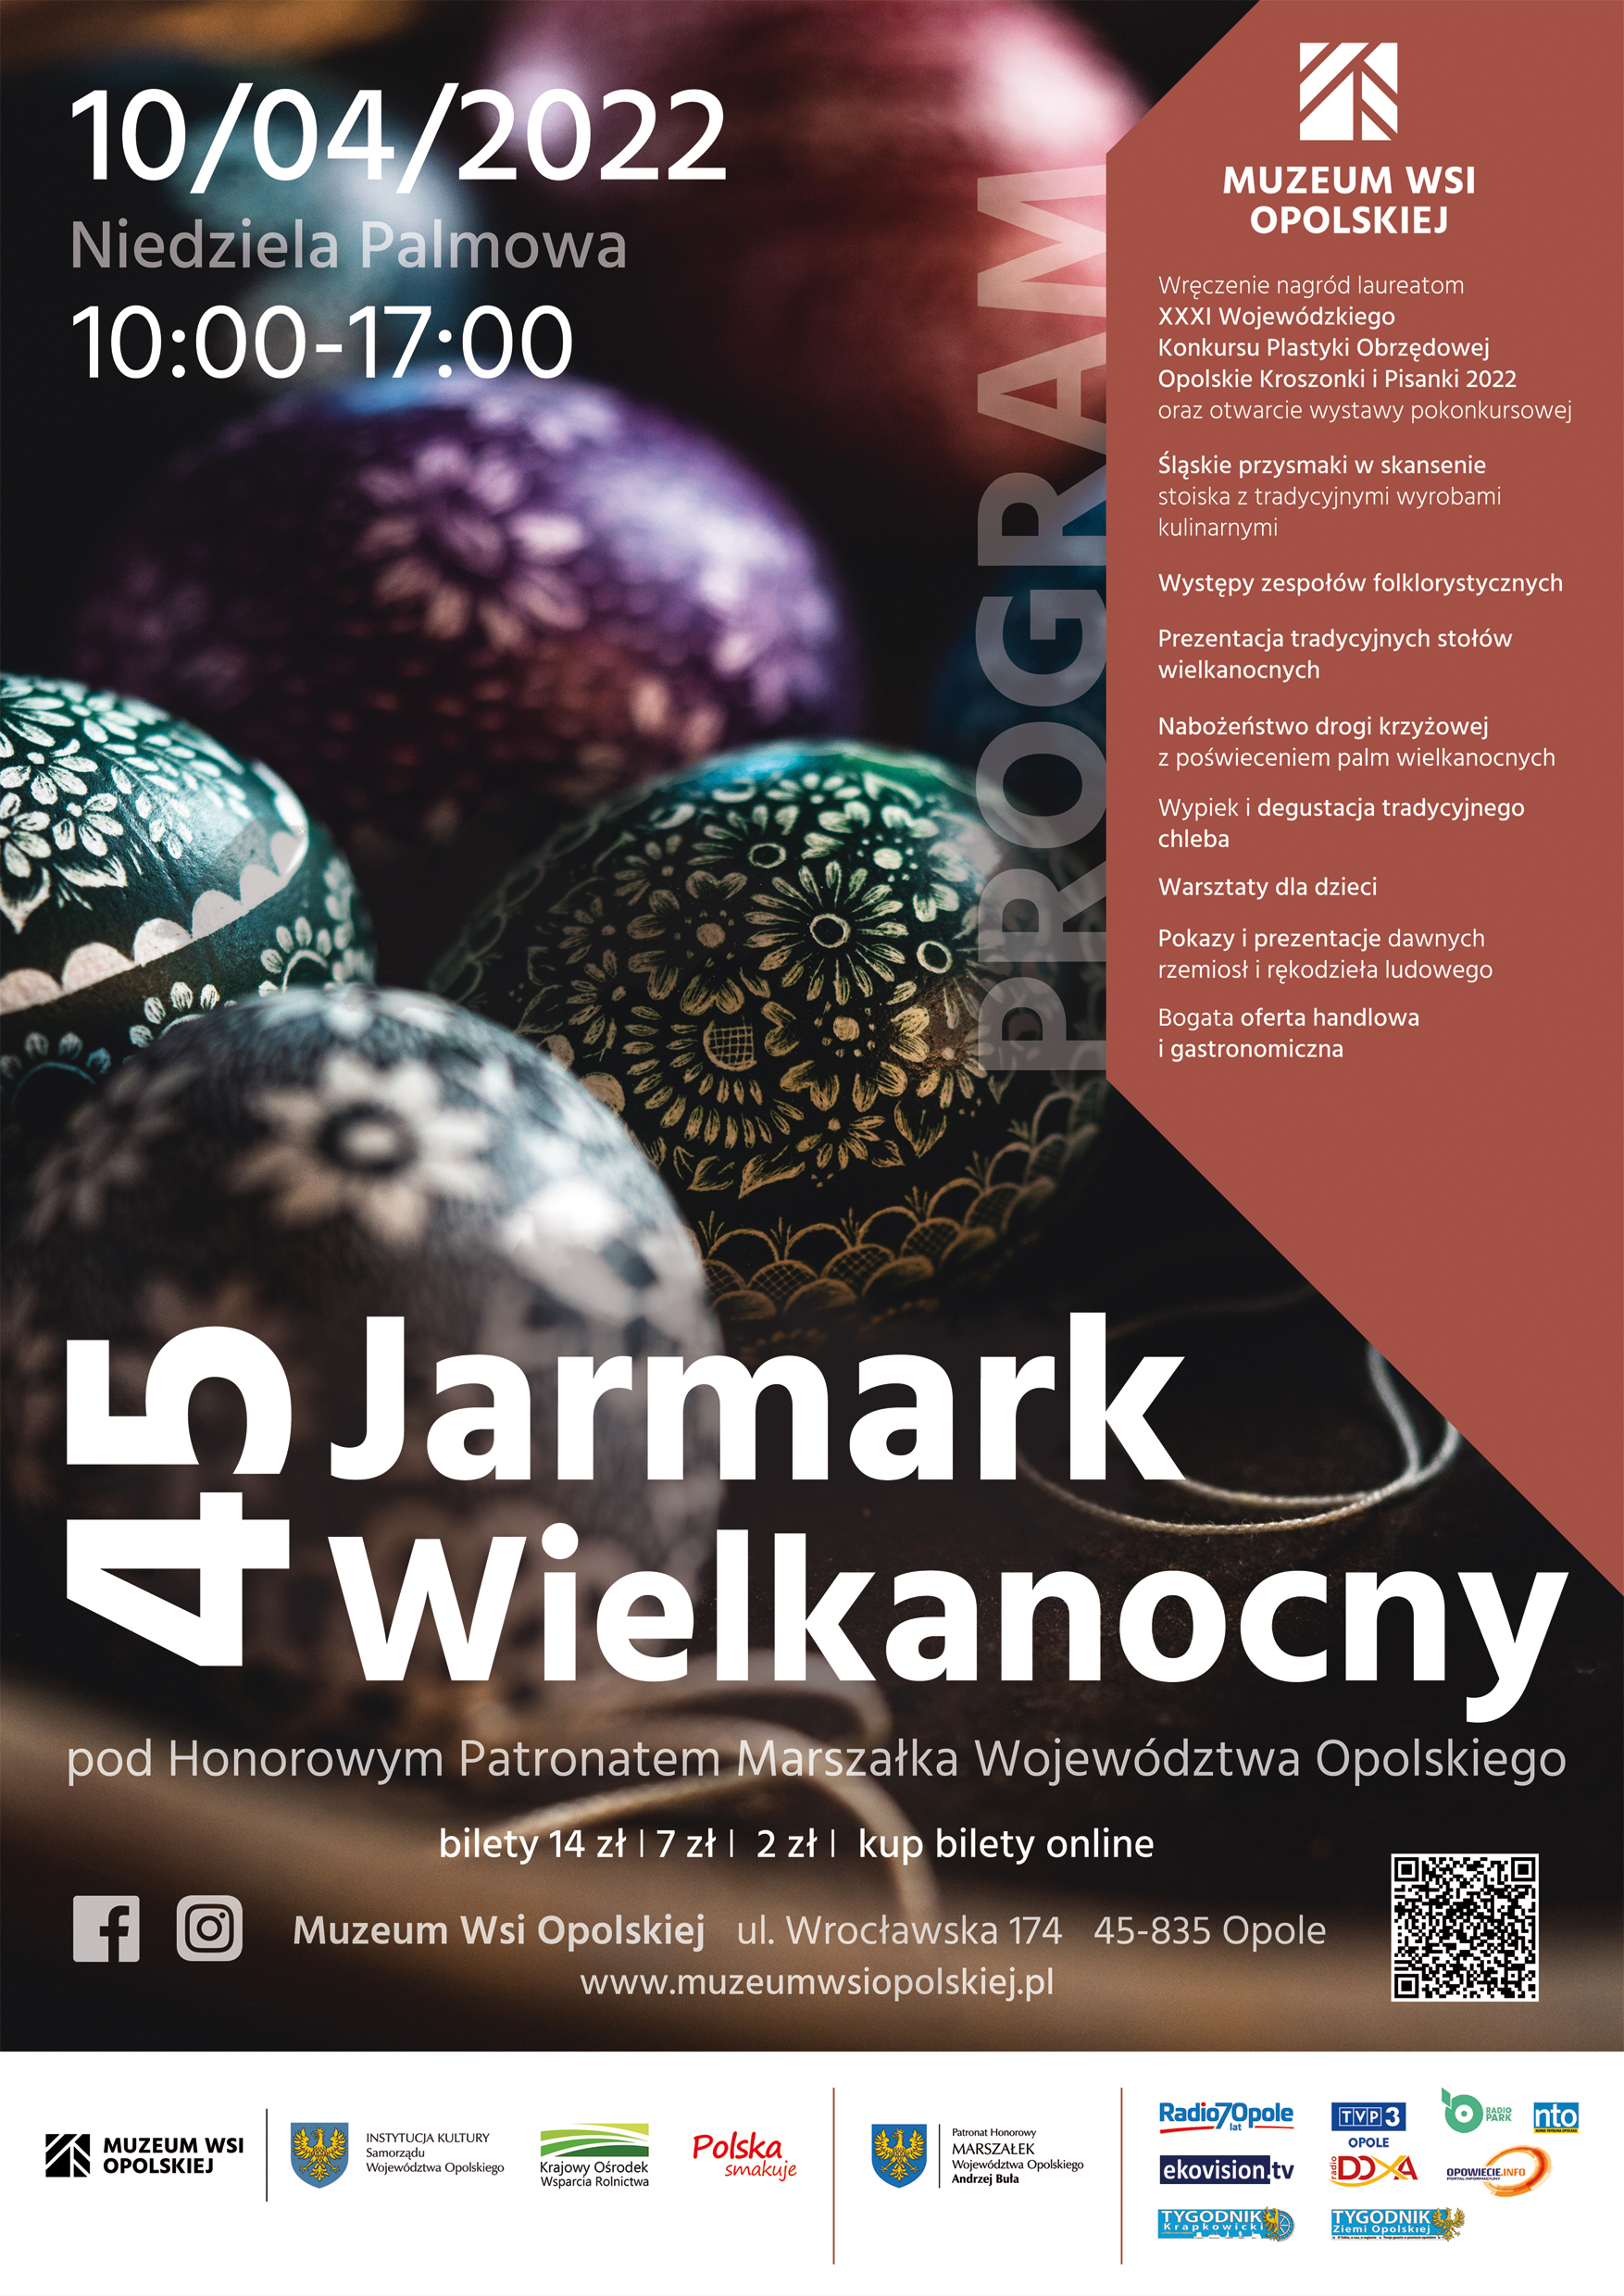 Plakat promujący Jarmark Wielkanocny w Muzeum Wsi Opolskiej w Opolu.